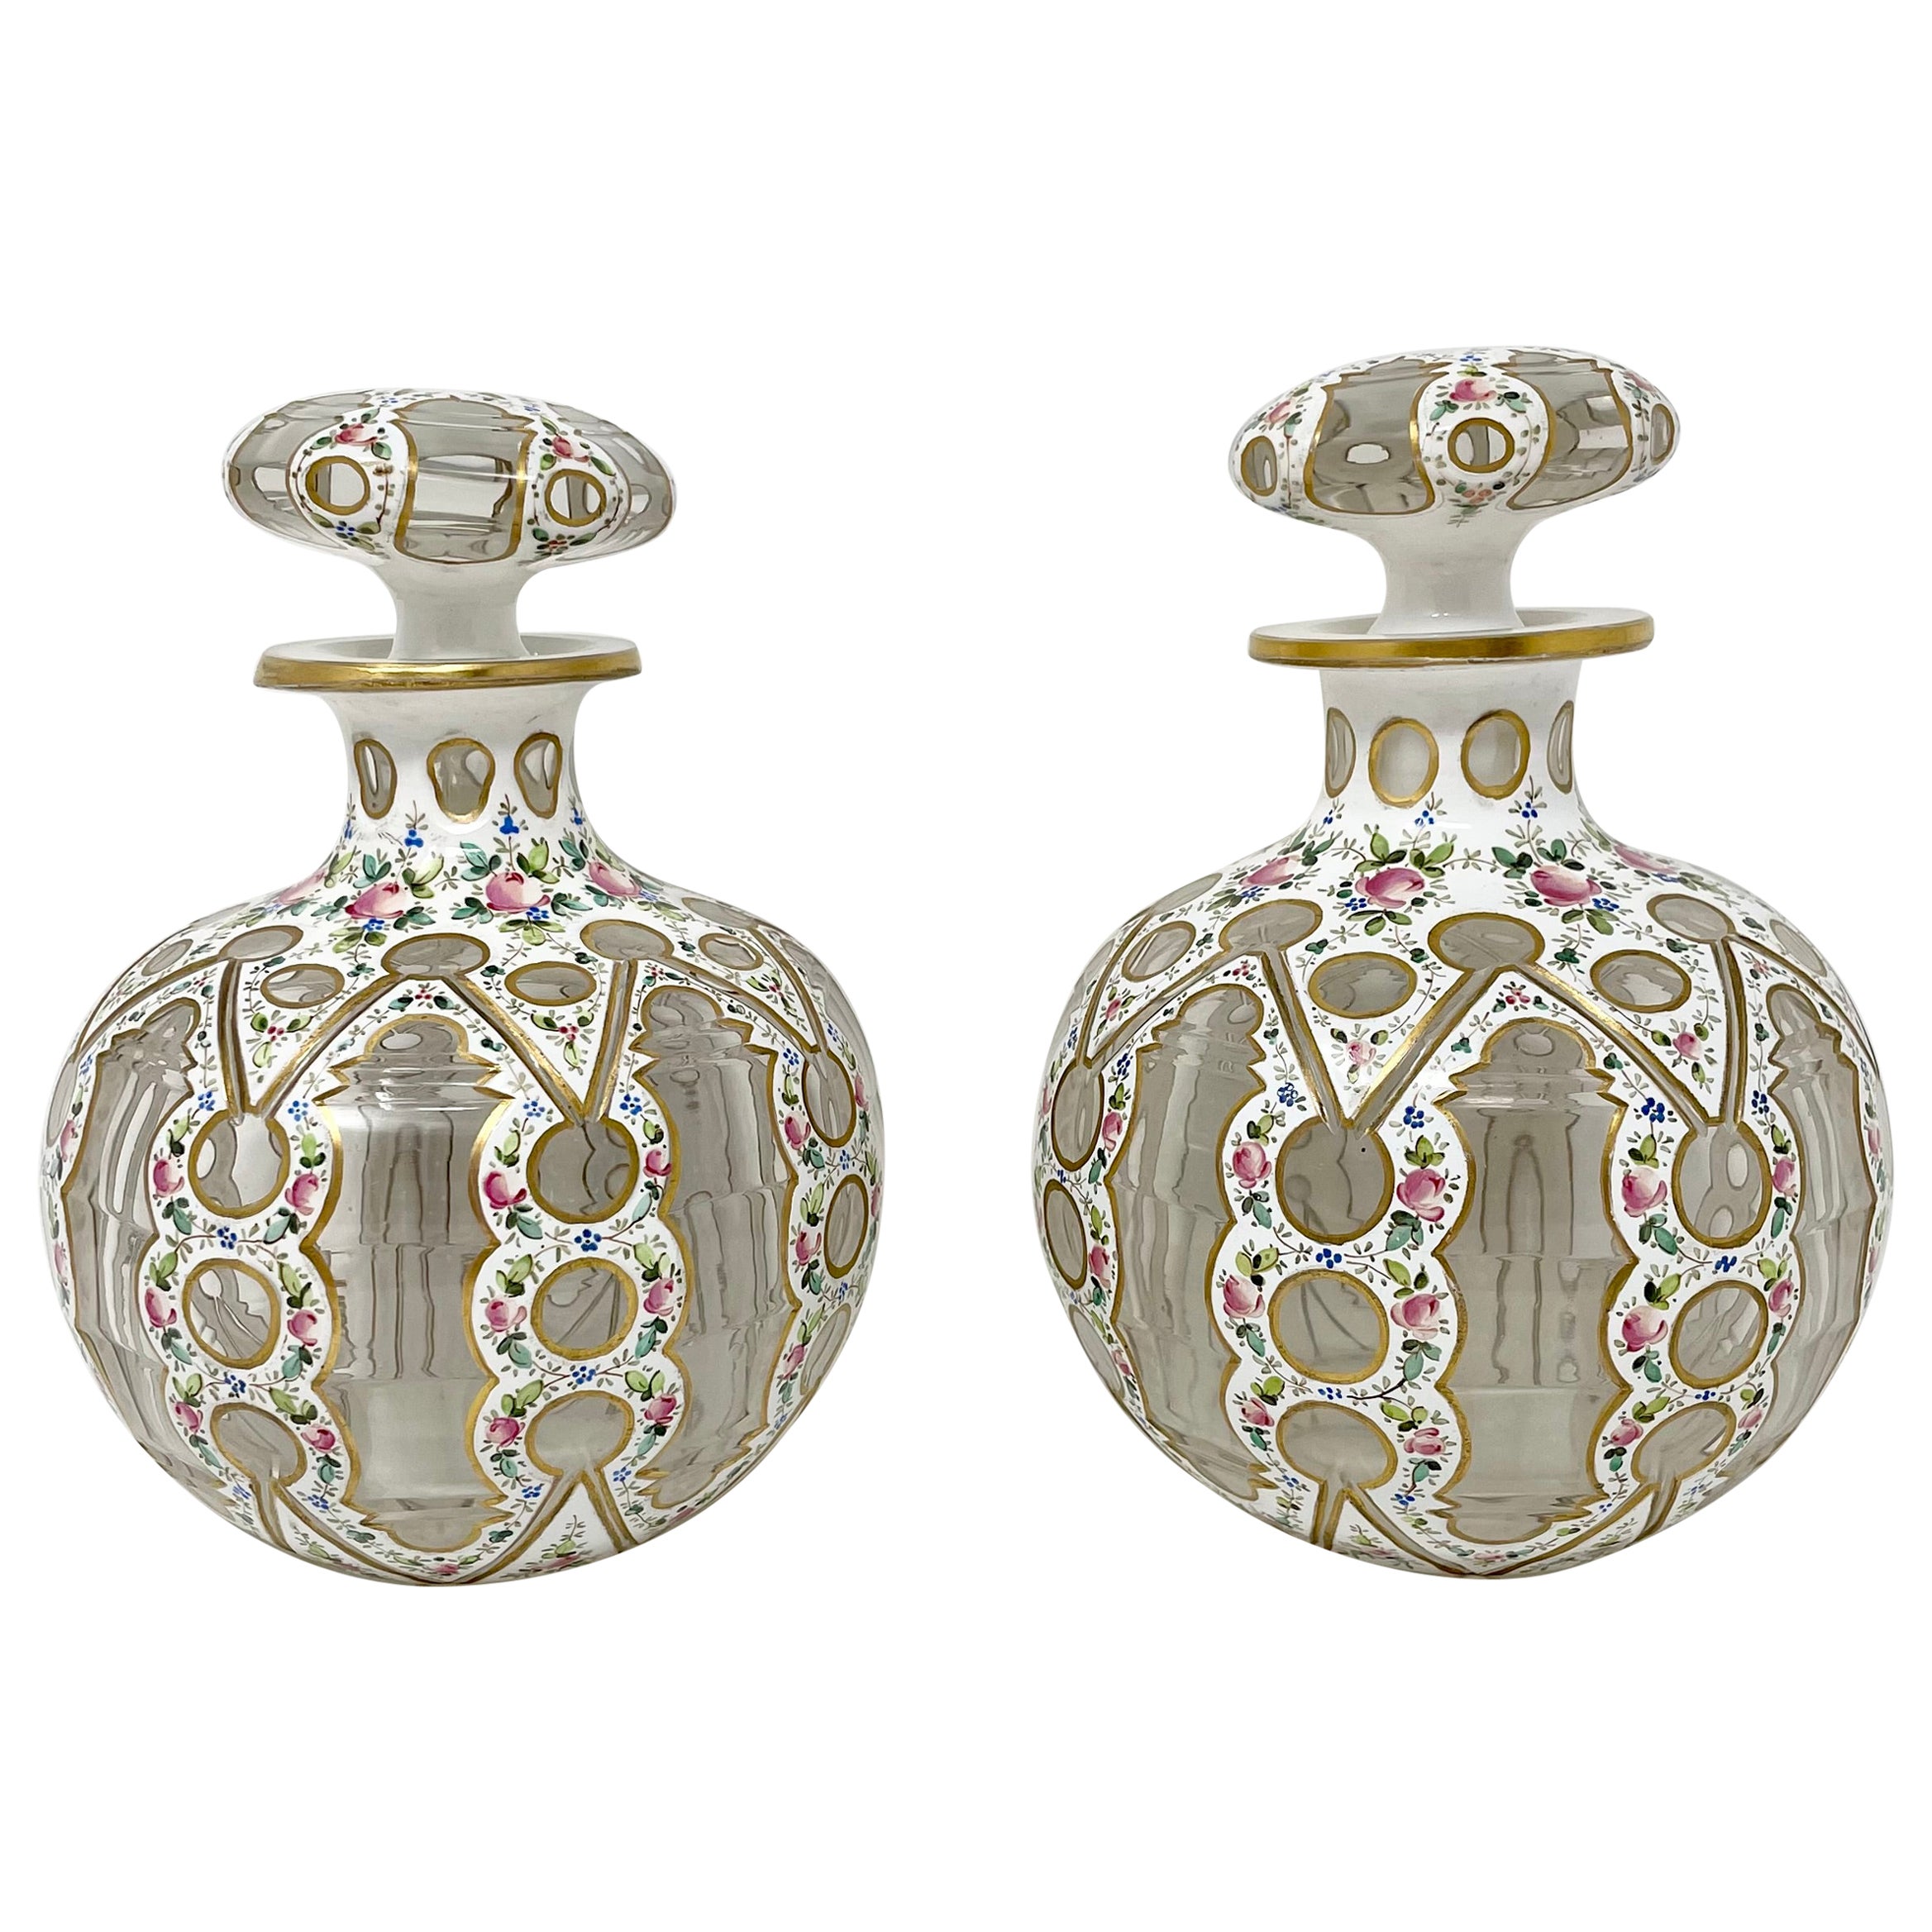 Paar antike französische Parfümflaschen aus emailliertem Porzellan und Glas, um 1860-1870.